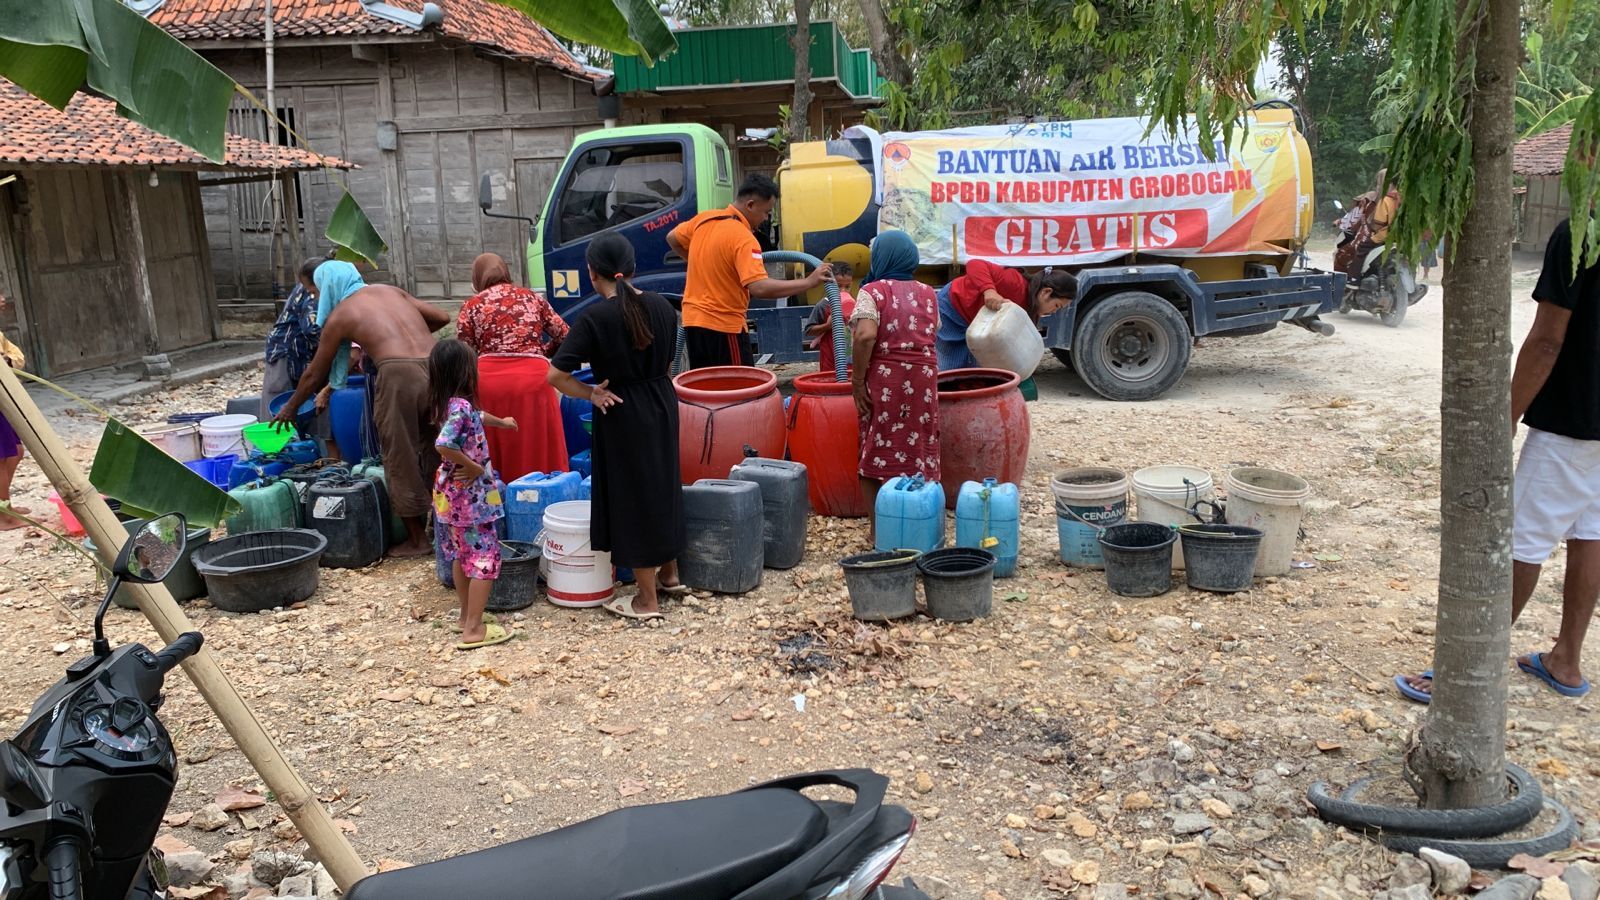 BPBD Grobogan saat menyalurkan bantuan air bersih di Desa Tunggulrejo, Kecamatan Gabus.